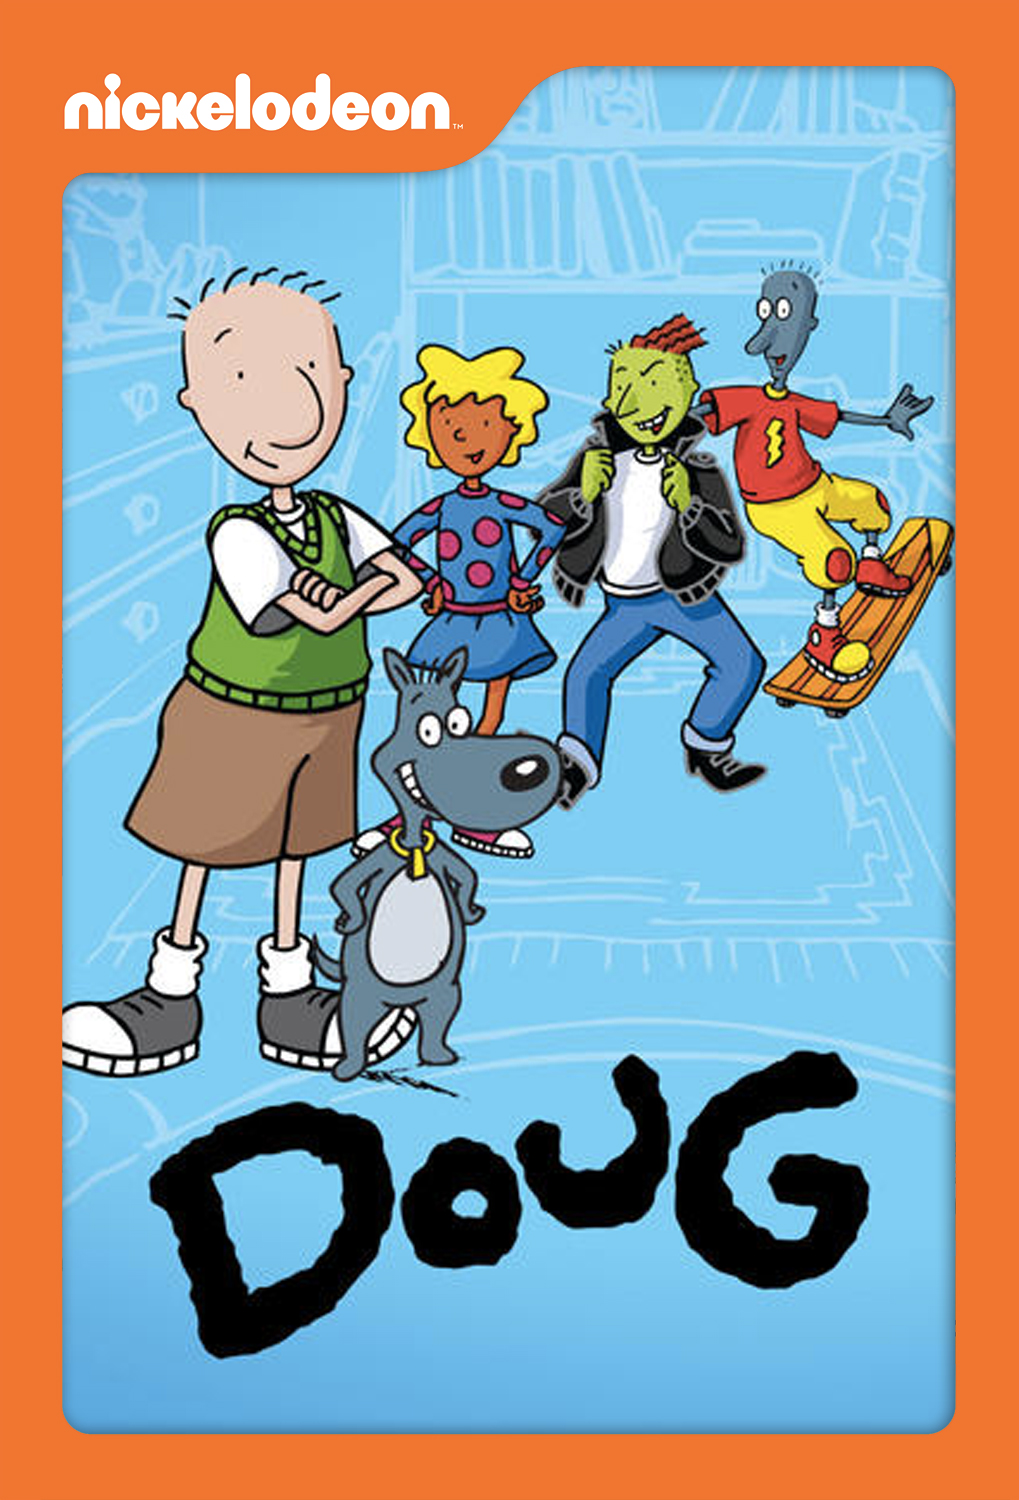 90s cartoon show Doug